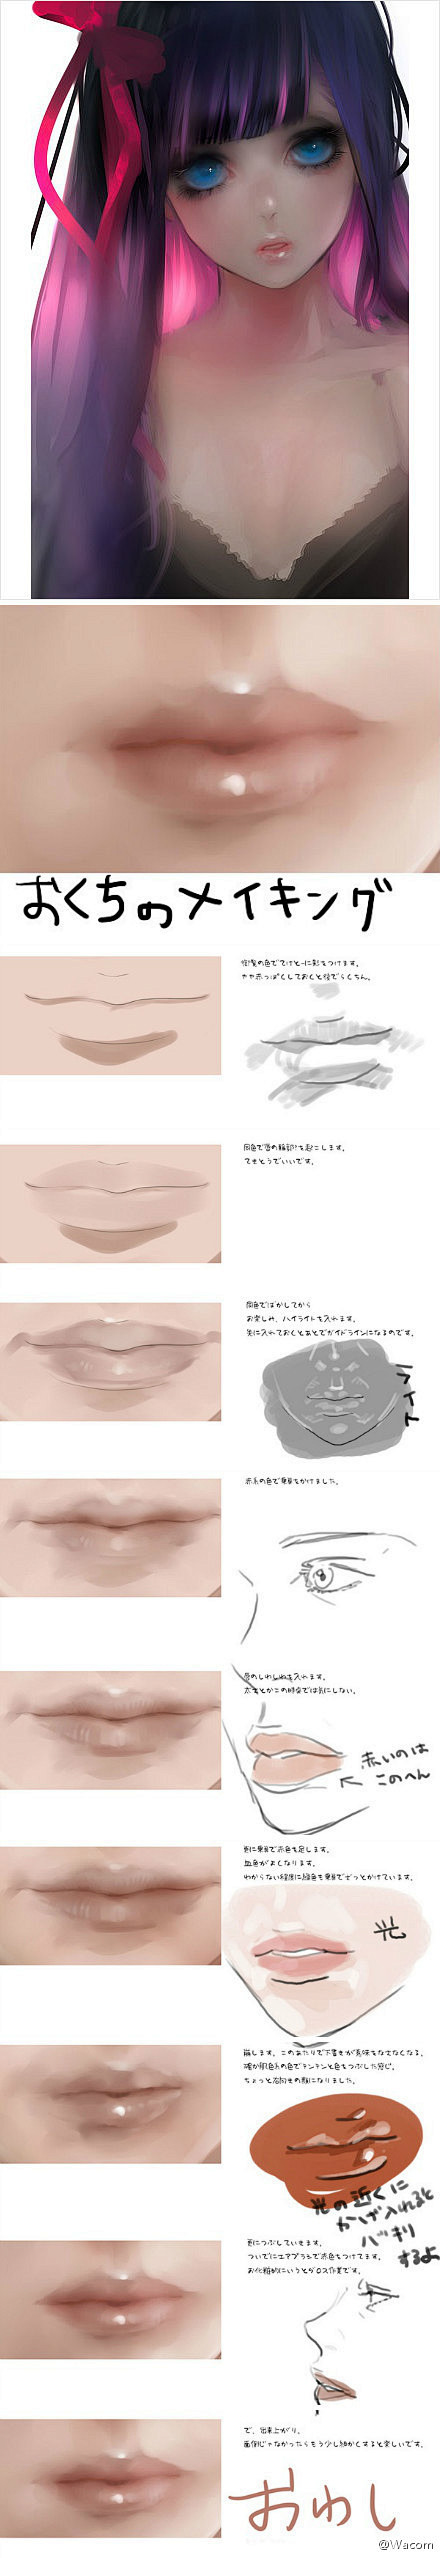 CG绘技法收集——嘴巴